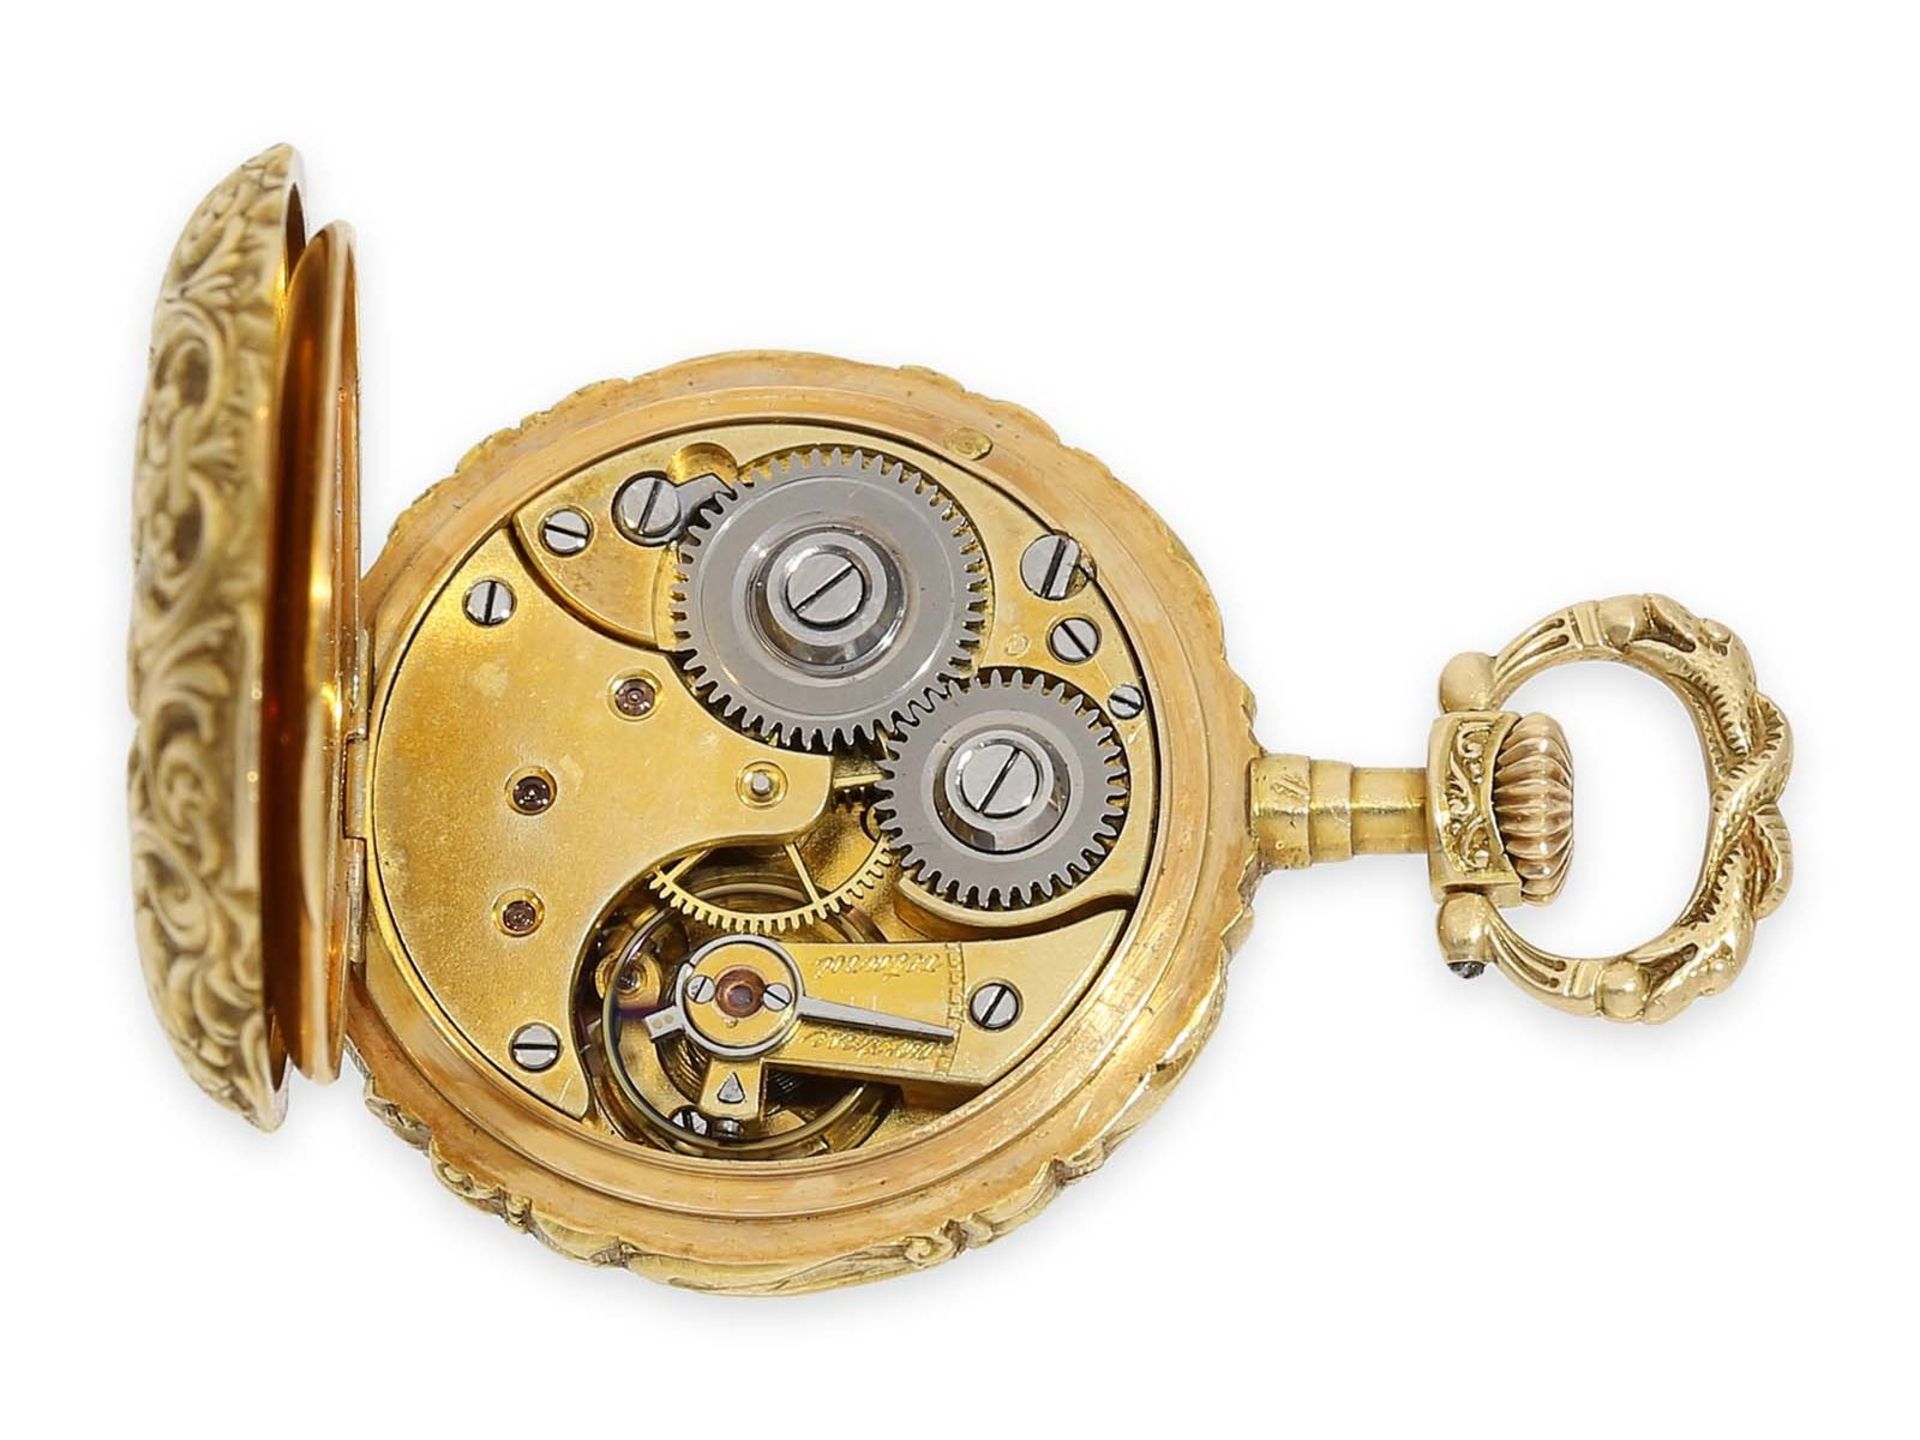 Taschenuhr: extrem rare Omega Damenuhr mit Renaissance-Gehäuse und Zifferblatt aus Guilloche- - Bild 3 aus 5